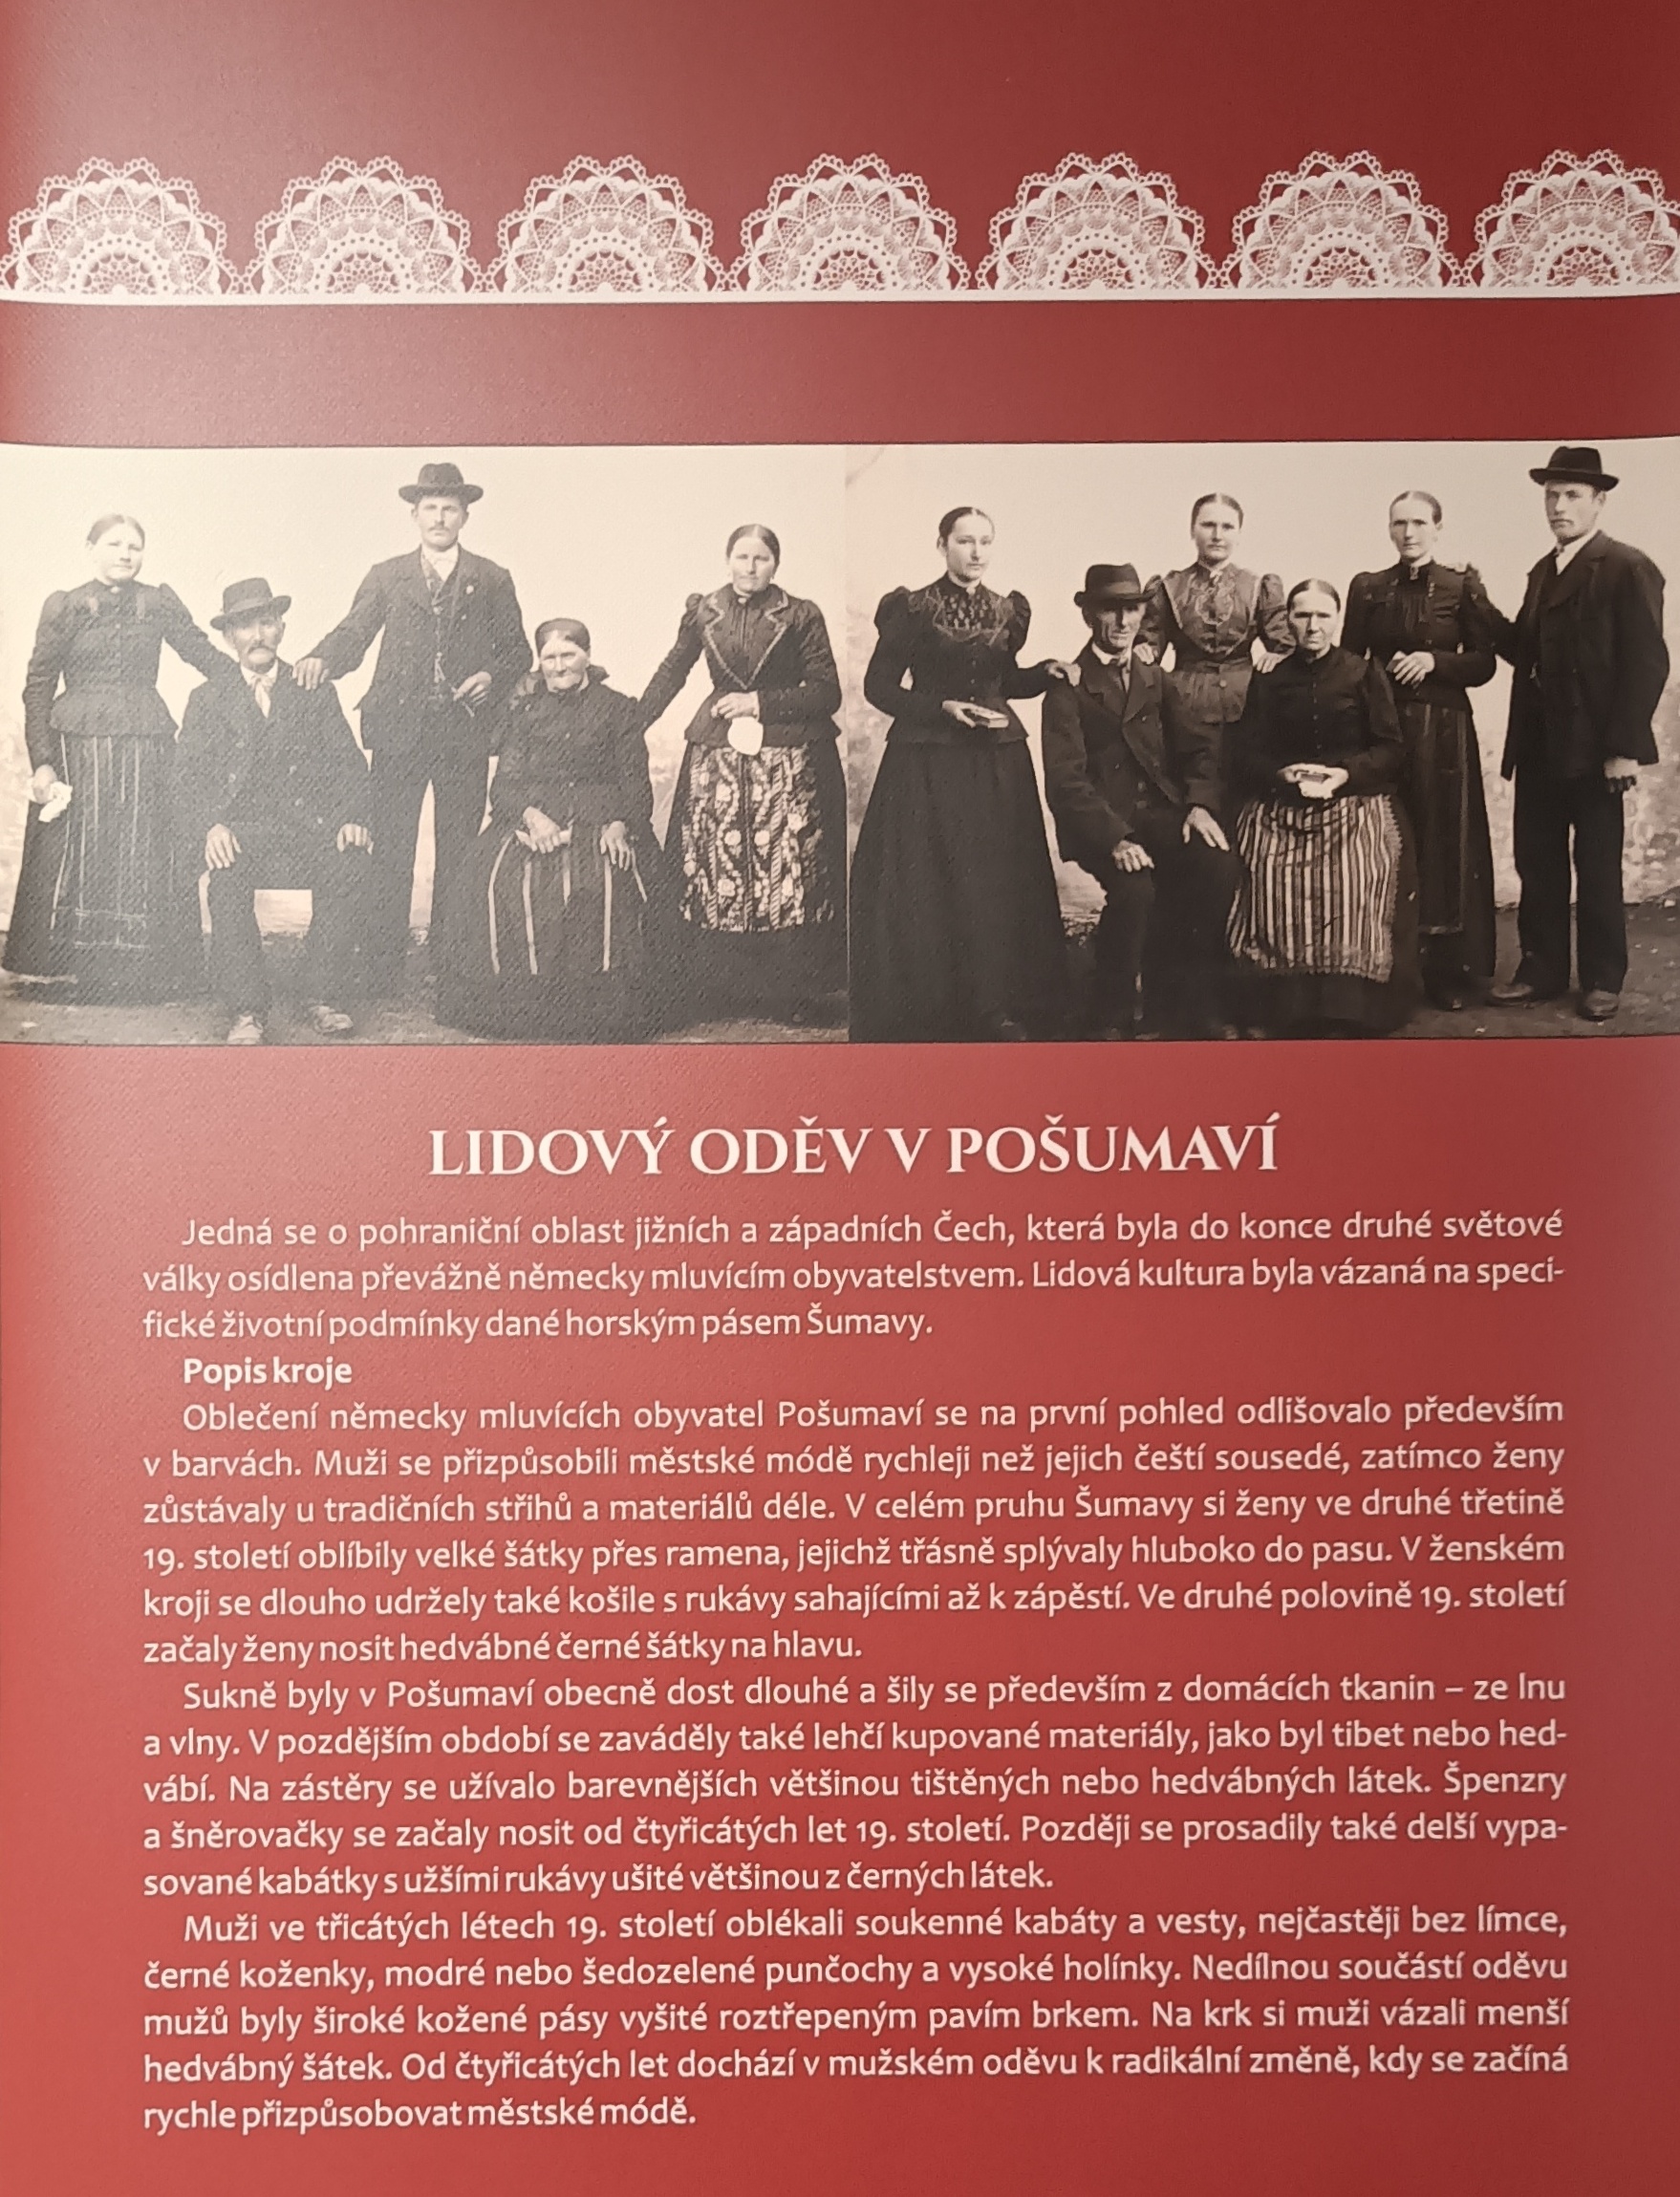 Výstava Jihočeské lidové kroje v Regionálním muzeu Český Krumlov